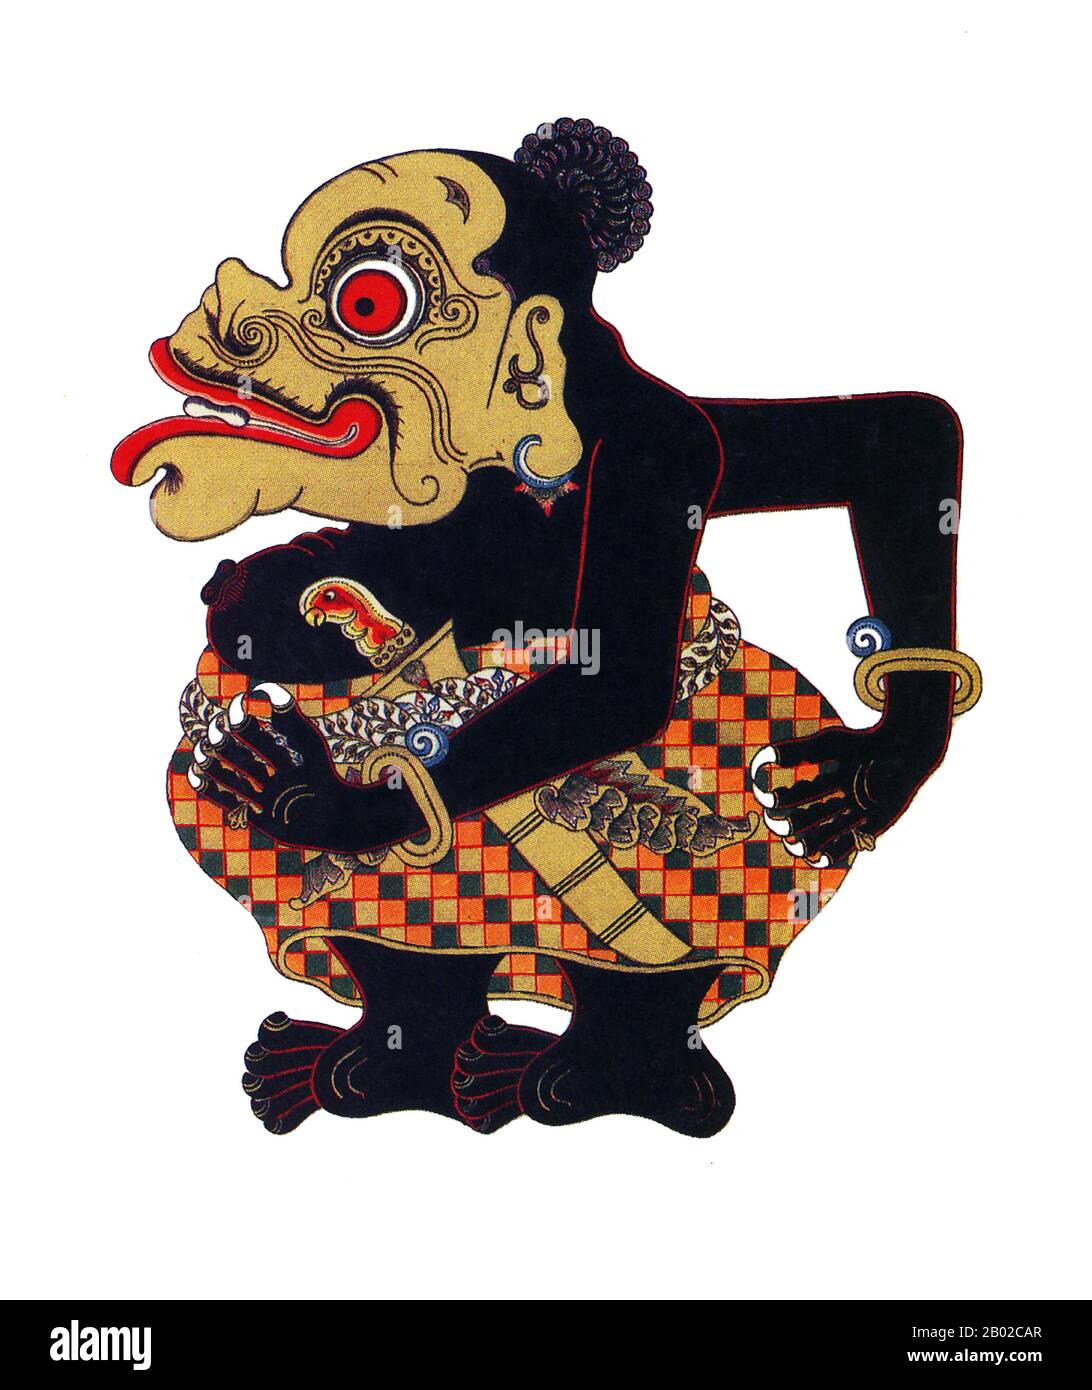 Im javanischen Wayang (Schattenpuppen) sind die Panakawan oder Panakavan (Phanakavhan) die Clowndiener des Helden. Es gibt vier davon - Semar (auch Ki Lurah Semar genannt), Petruk, Gareng und Bagong. Semar ist die Personifikation einer Gottheit, die manchmal als Dhanyang oder Schutzgeist der Insel Java bezeichnet wird. In der javanischen Mythologie können sich die Götter nur als hässliche oder sonst nicht präbesitzende Menschen manifestieren, und so wird Semar immer als kurz und dick mit einer Puffnase und einer verwinkenden Hernie dargestellt. Seine drei Gefährten sind seine adoptierten Söhne, die Semar als Votare von ihrem p gegeben wurden Stockfoto